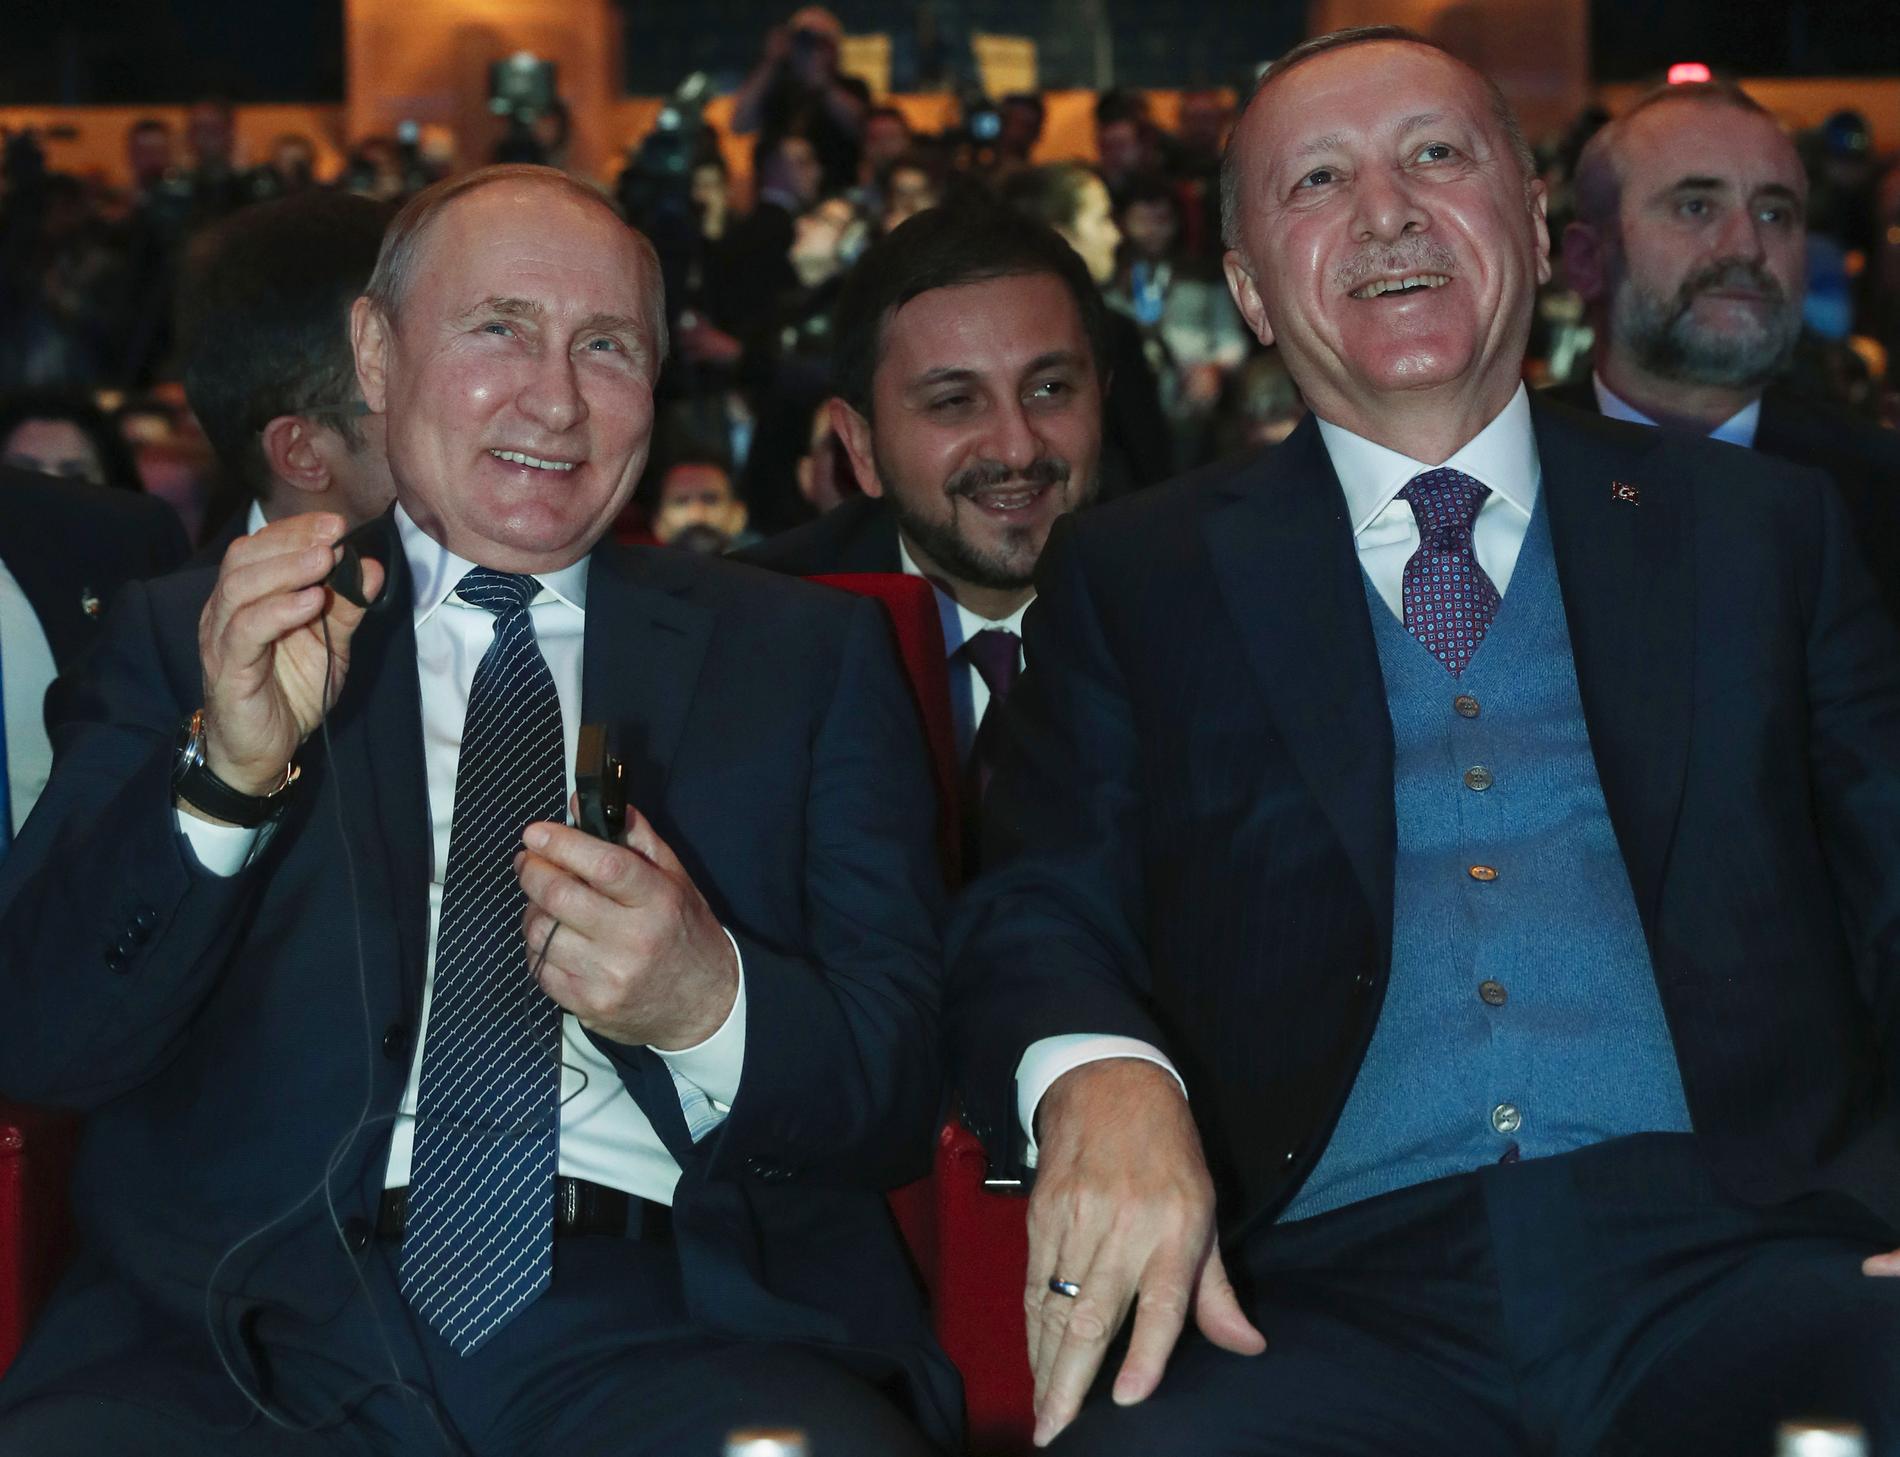 Rysslands president Vladimir Putin (till vänster) tillsammans med sin turkiske kollega Recep Tayyip Erdogan i samband med en gasledningsceremoni tidigare i år.